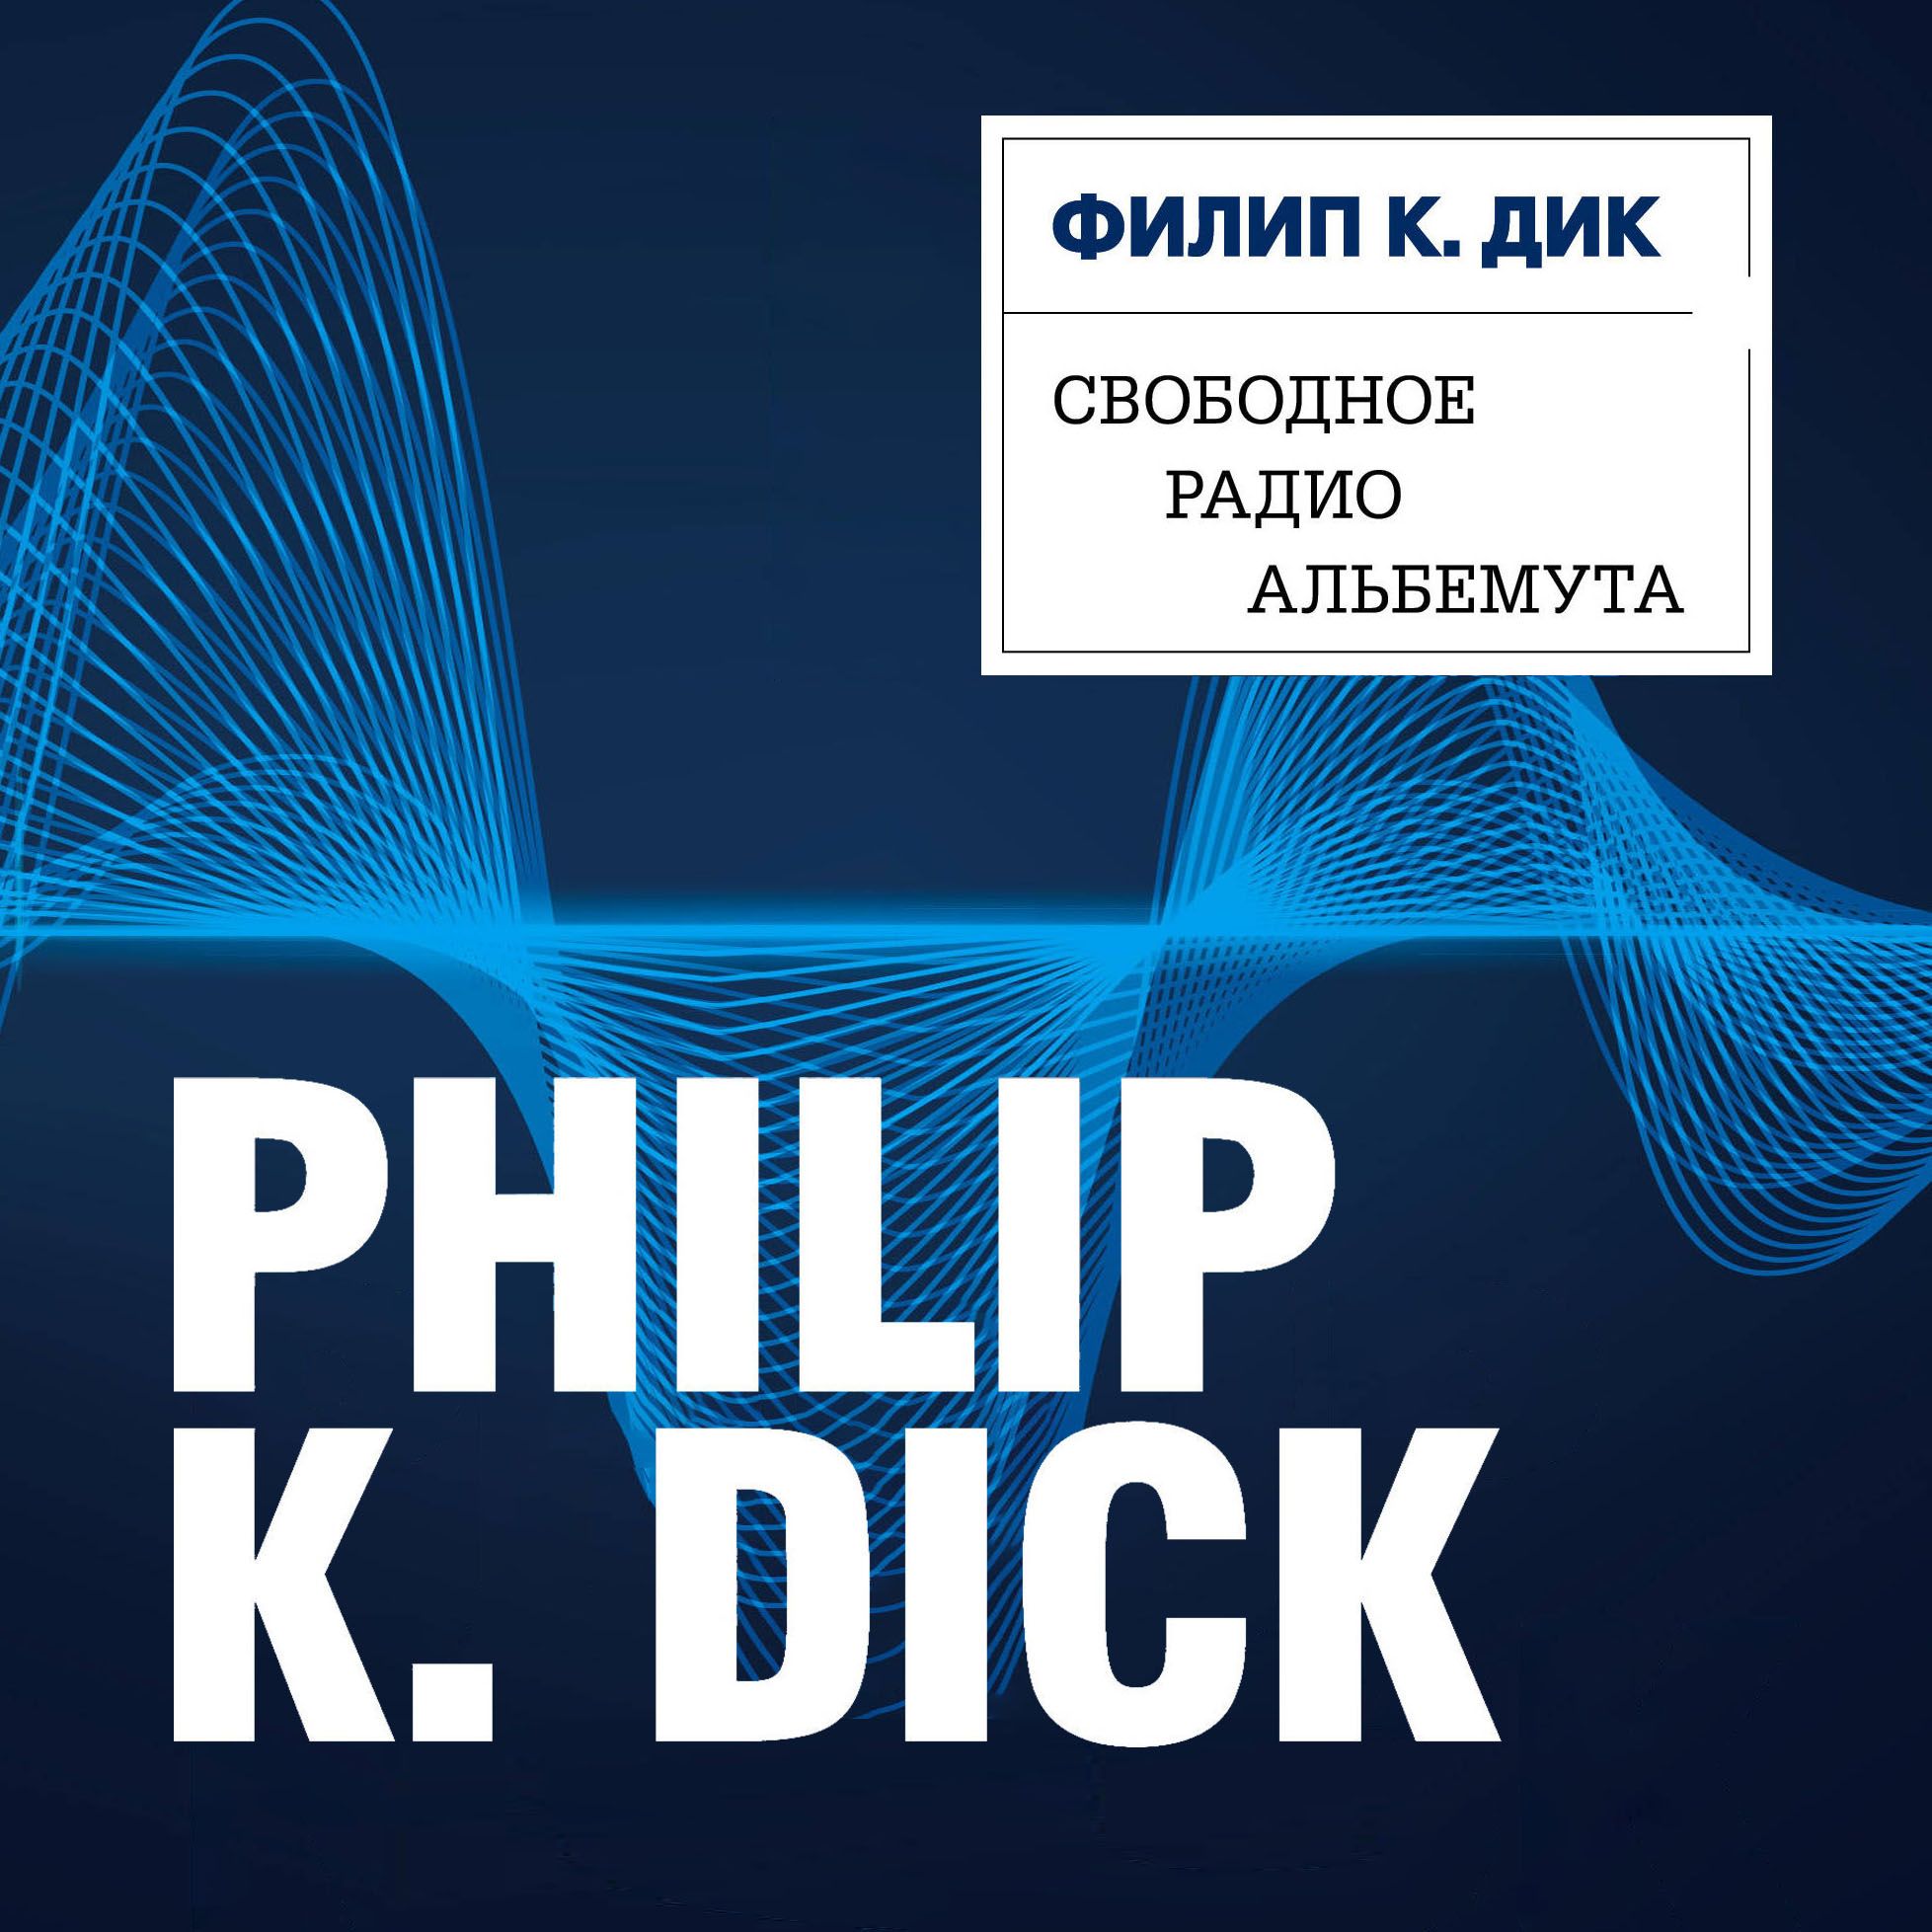 Скачать Свободное радио Альбемута - Филип Киндред Дик